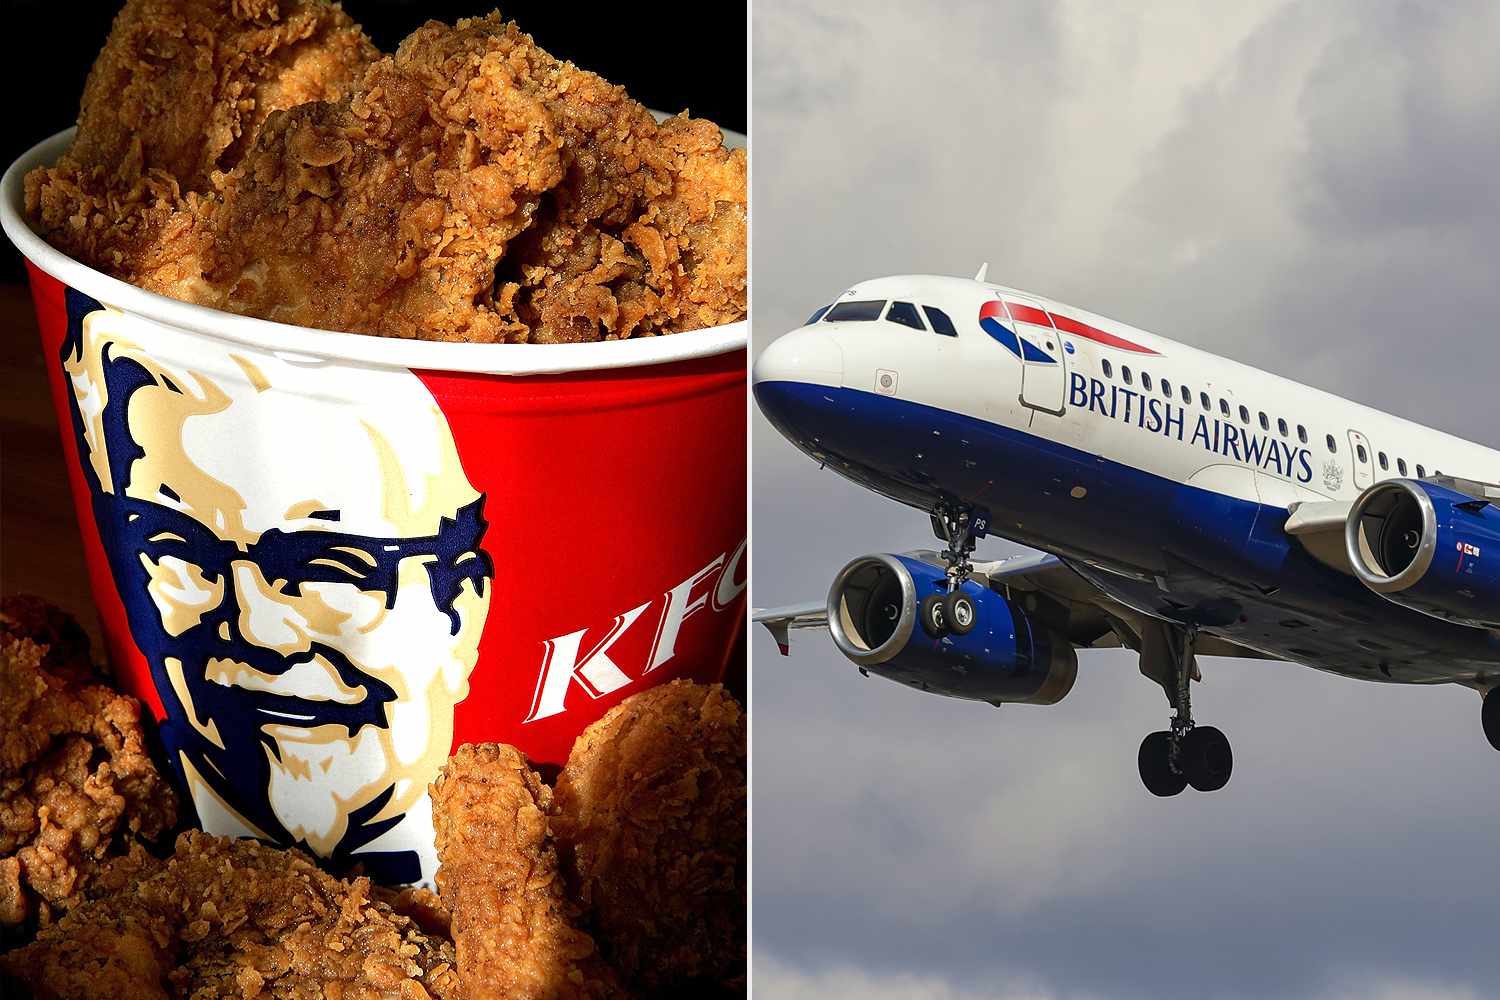 British Airways Serves KFC Chicken - Passengers Get A Leg Each On 12-Hour Flight To London